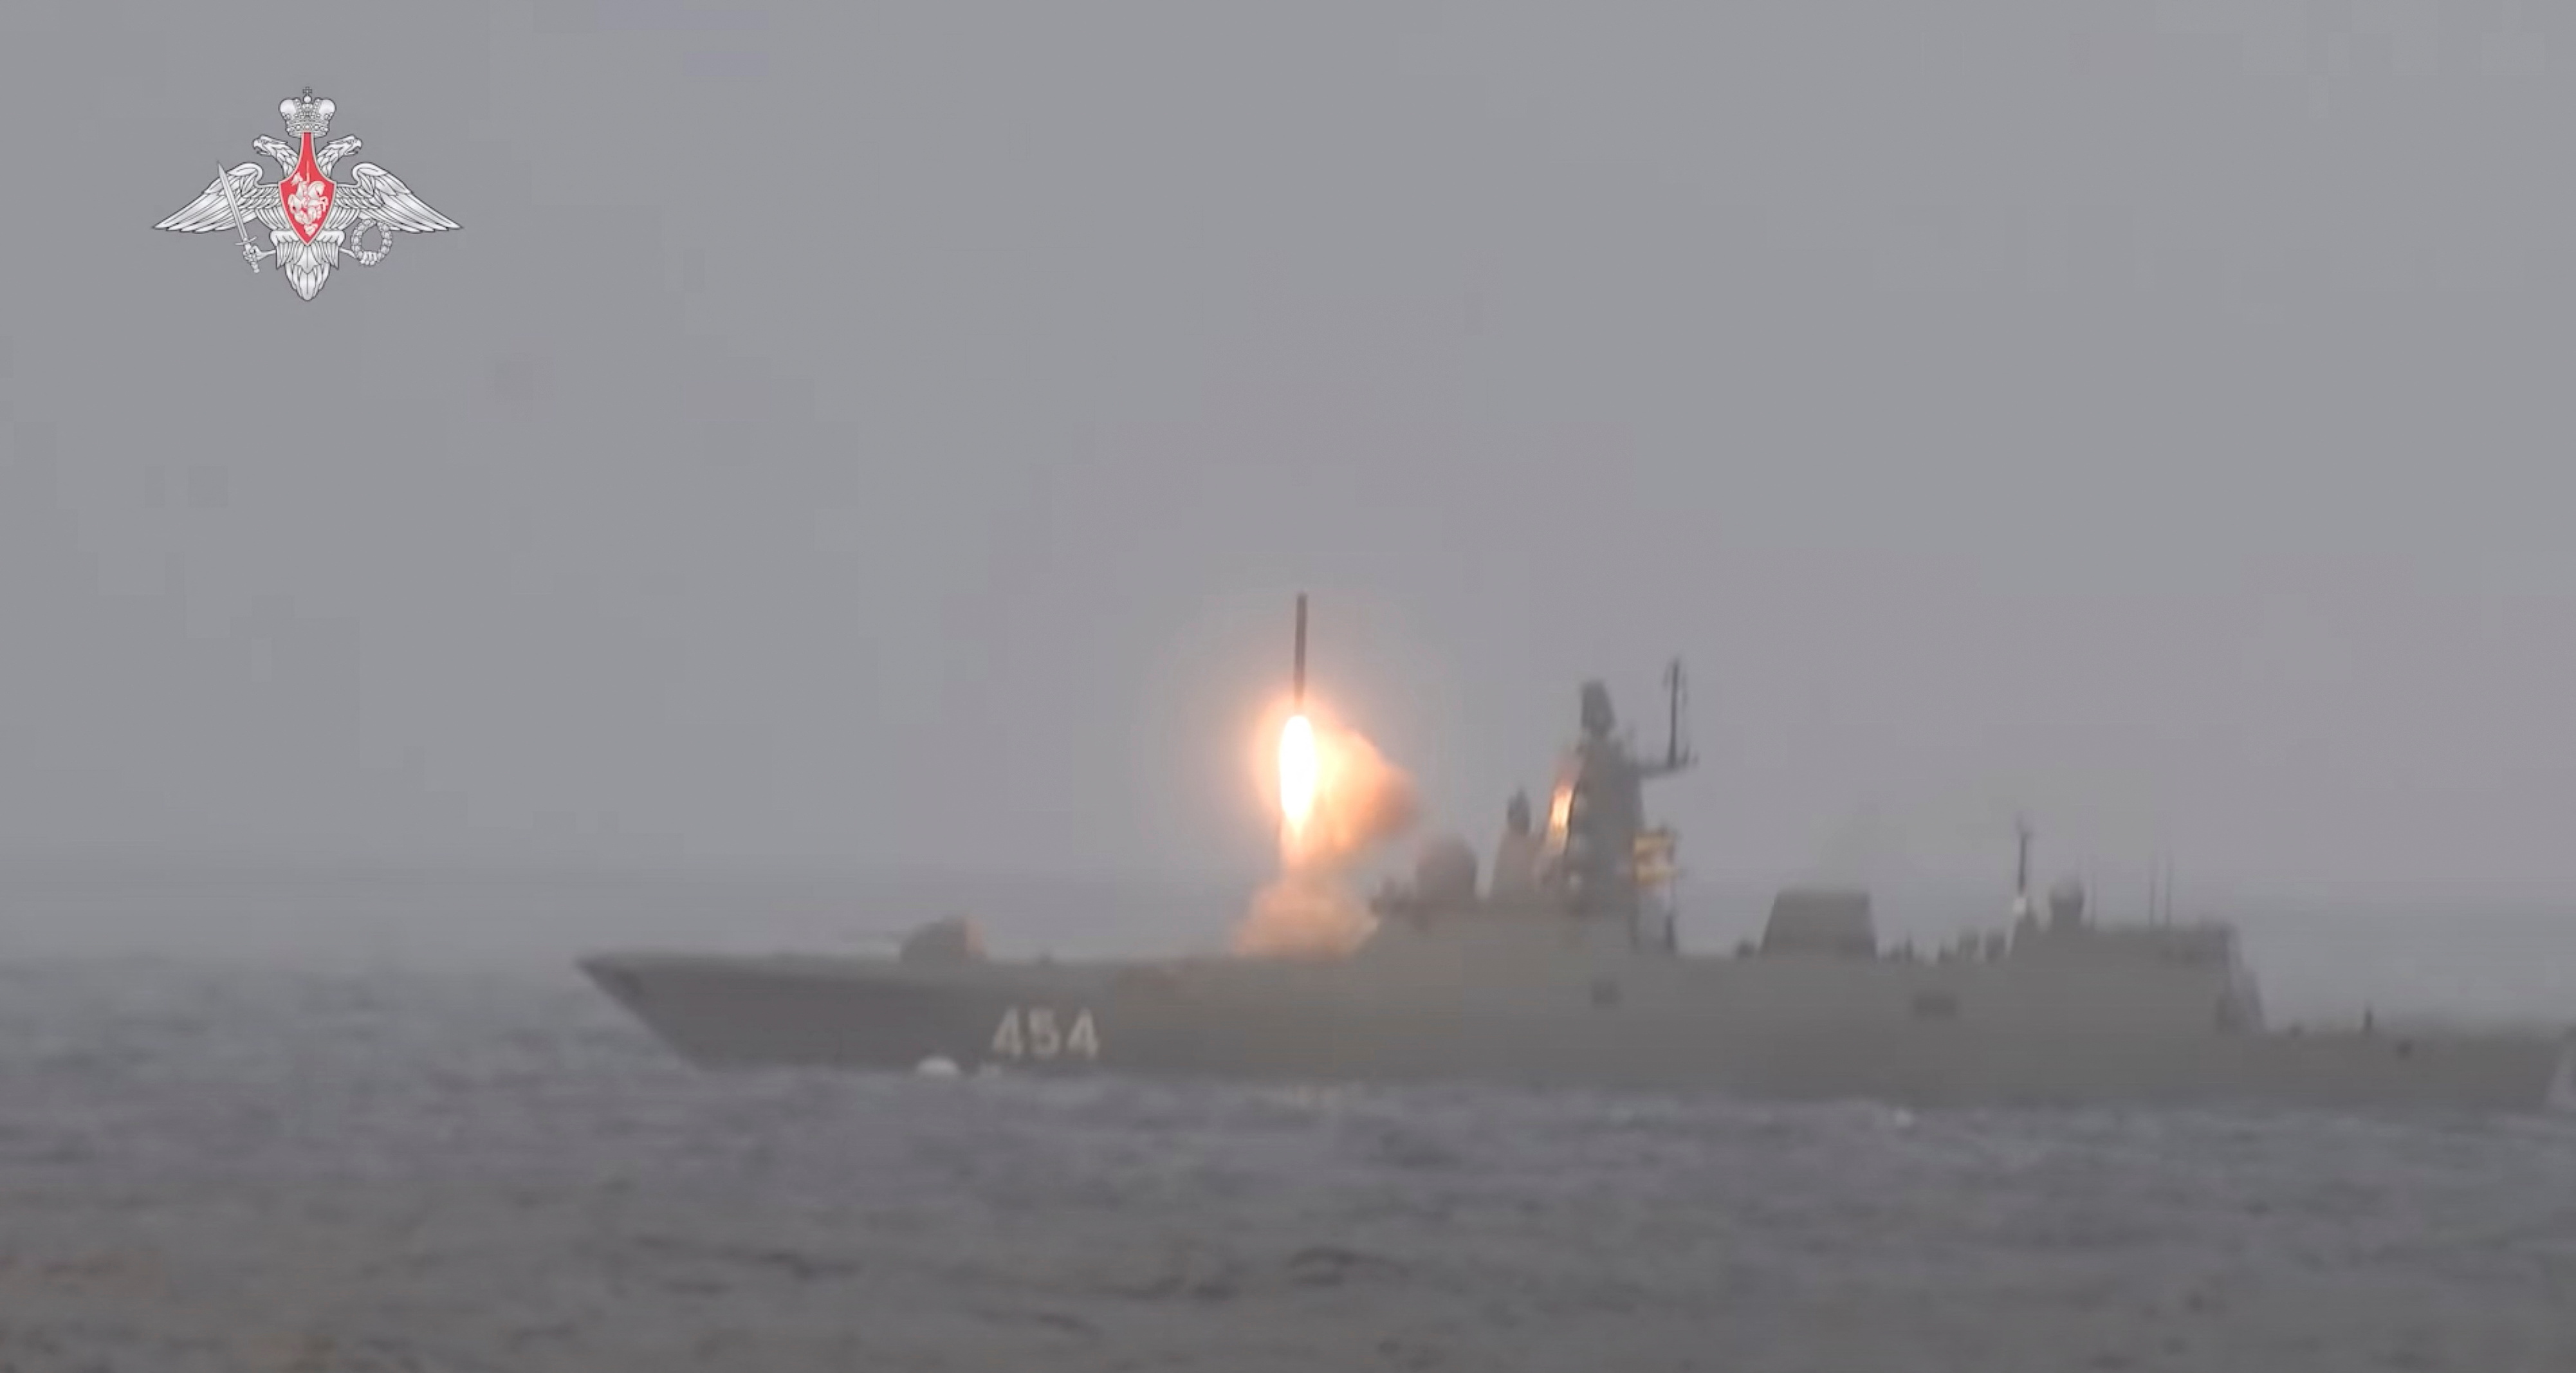 FOTO DE ARCHIVO: La fragata rusa de misiles guiados Almirante Gorshkov dispara el misil hipersónico Tsirkon durante los ejercicios de las fuerzas nucleares en un lugar desconocido, en esta imagen fija tomada de un vídeo publicado el 19 de febrero de 2022 (REUTERS)